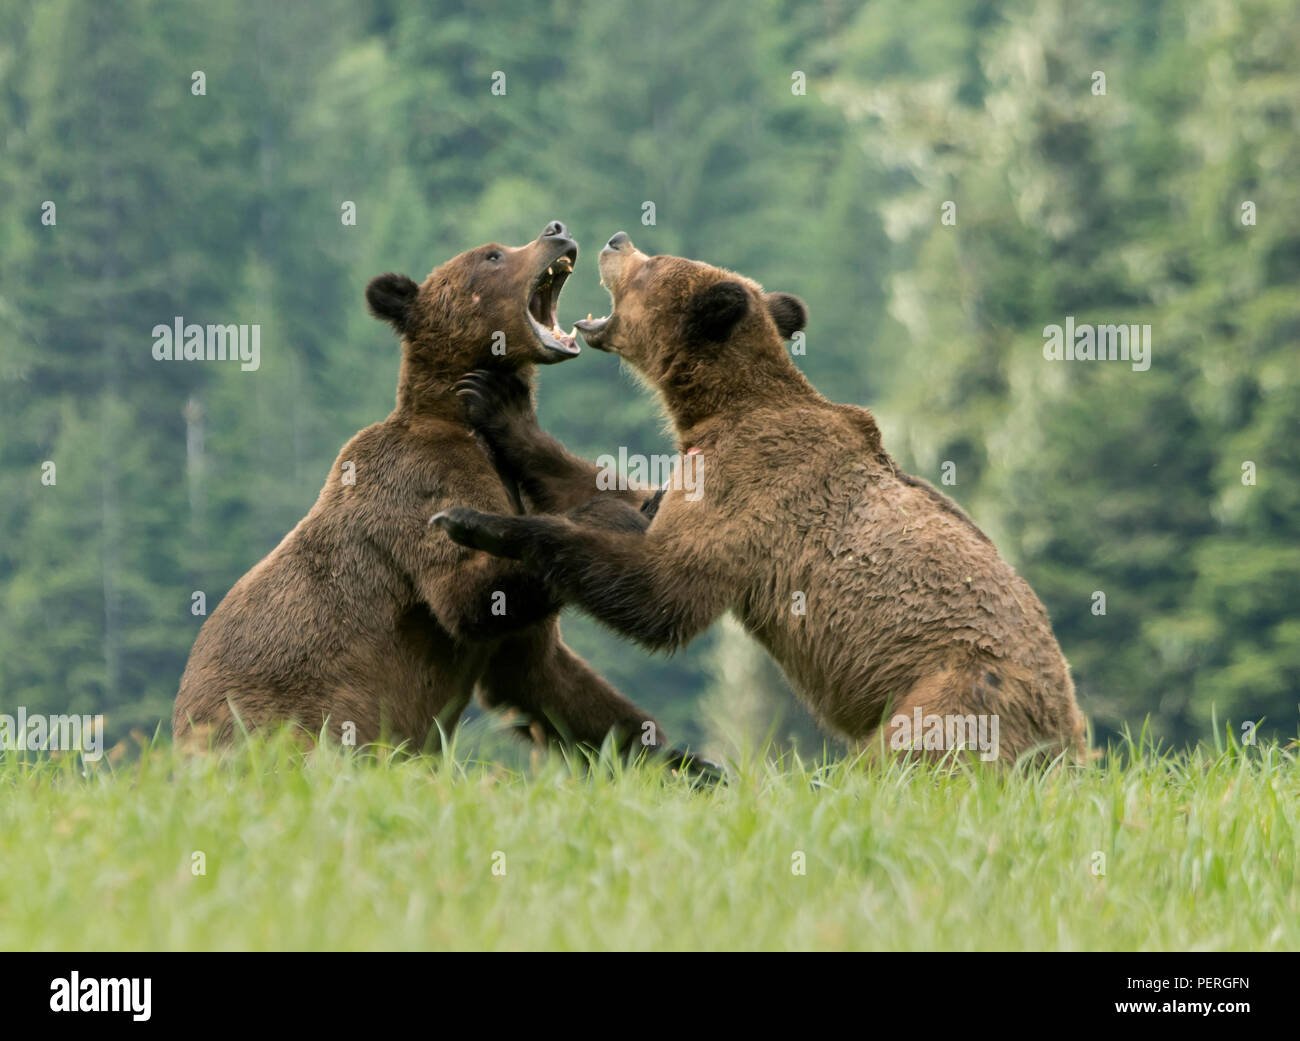 Grizzlybären (Ursus arctos) spielen - kämpfen, das khutzeymateen Grizzly Bär Heiligtum, Great Bear Rainforest, BC, Kanada Stockfoto